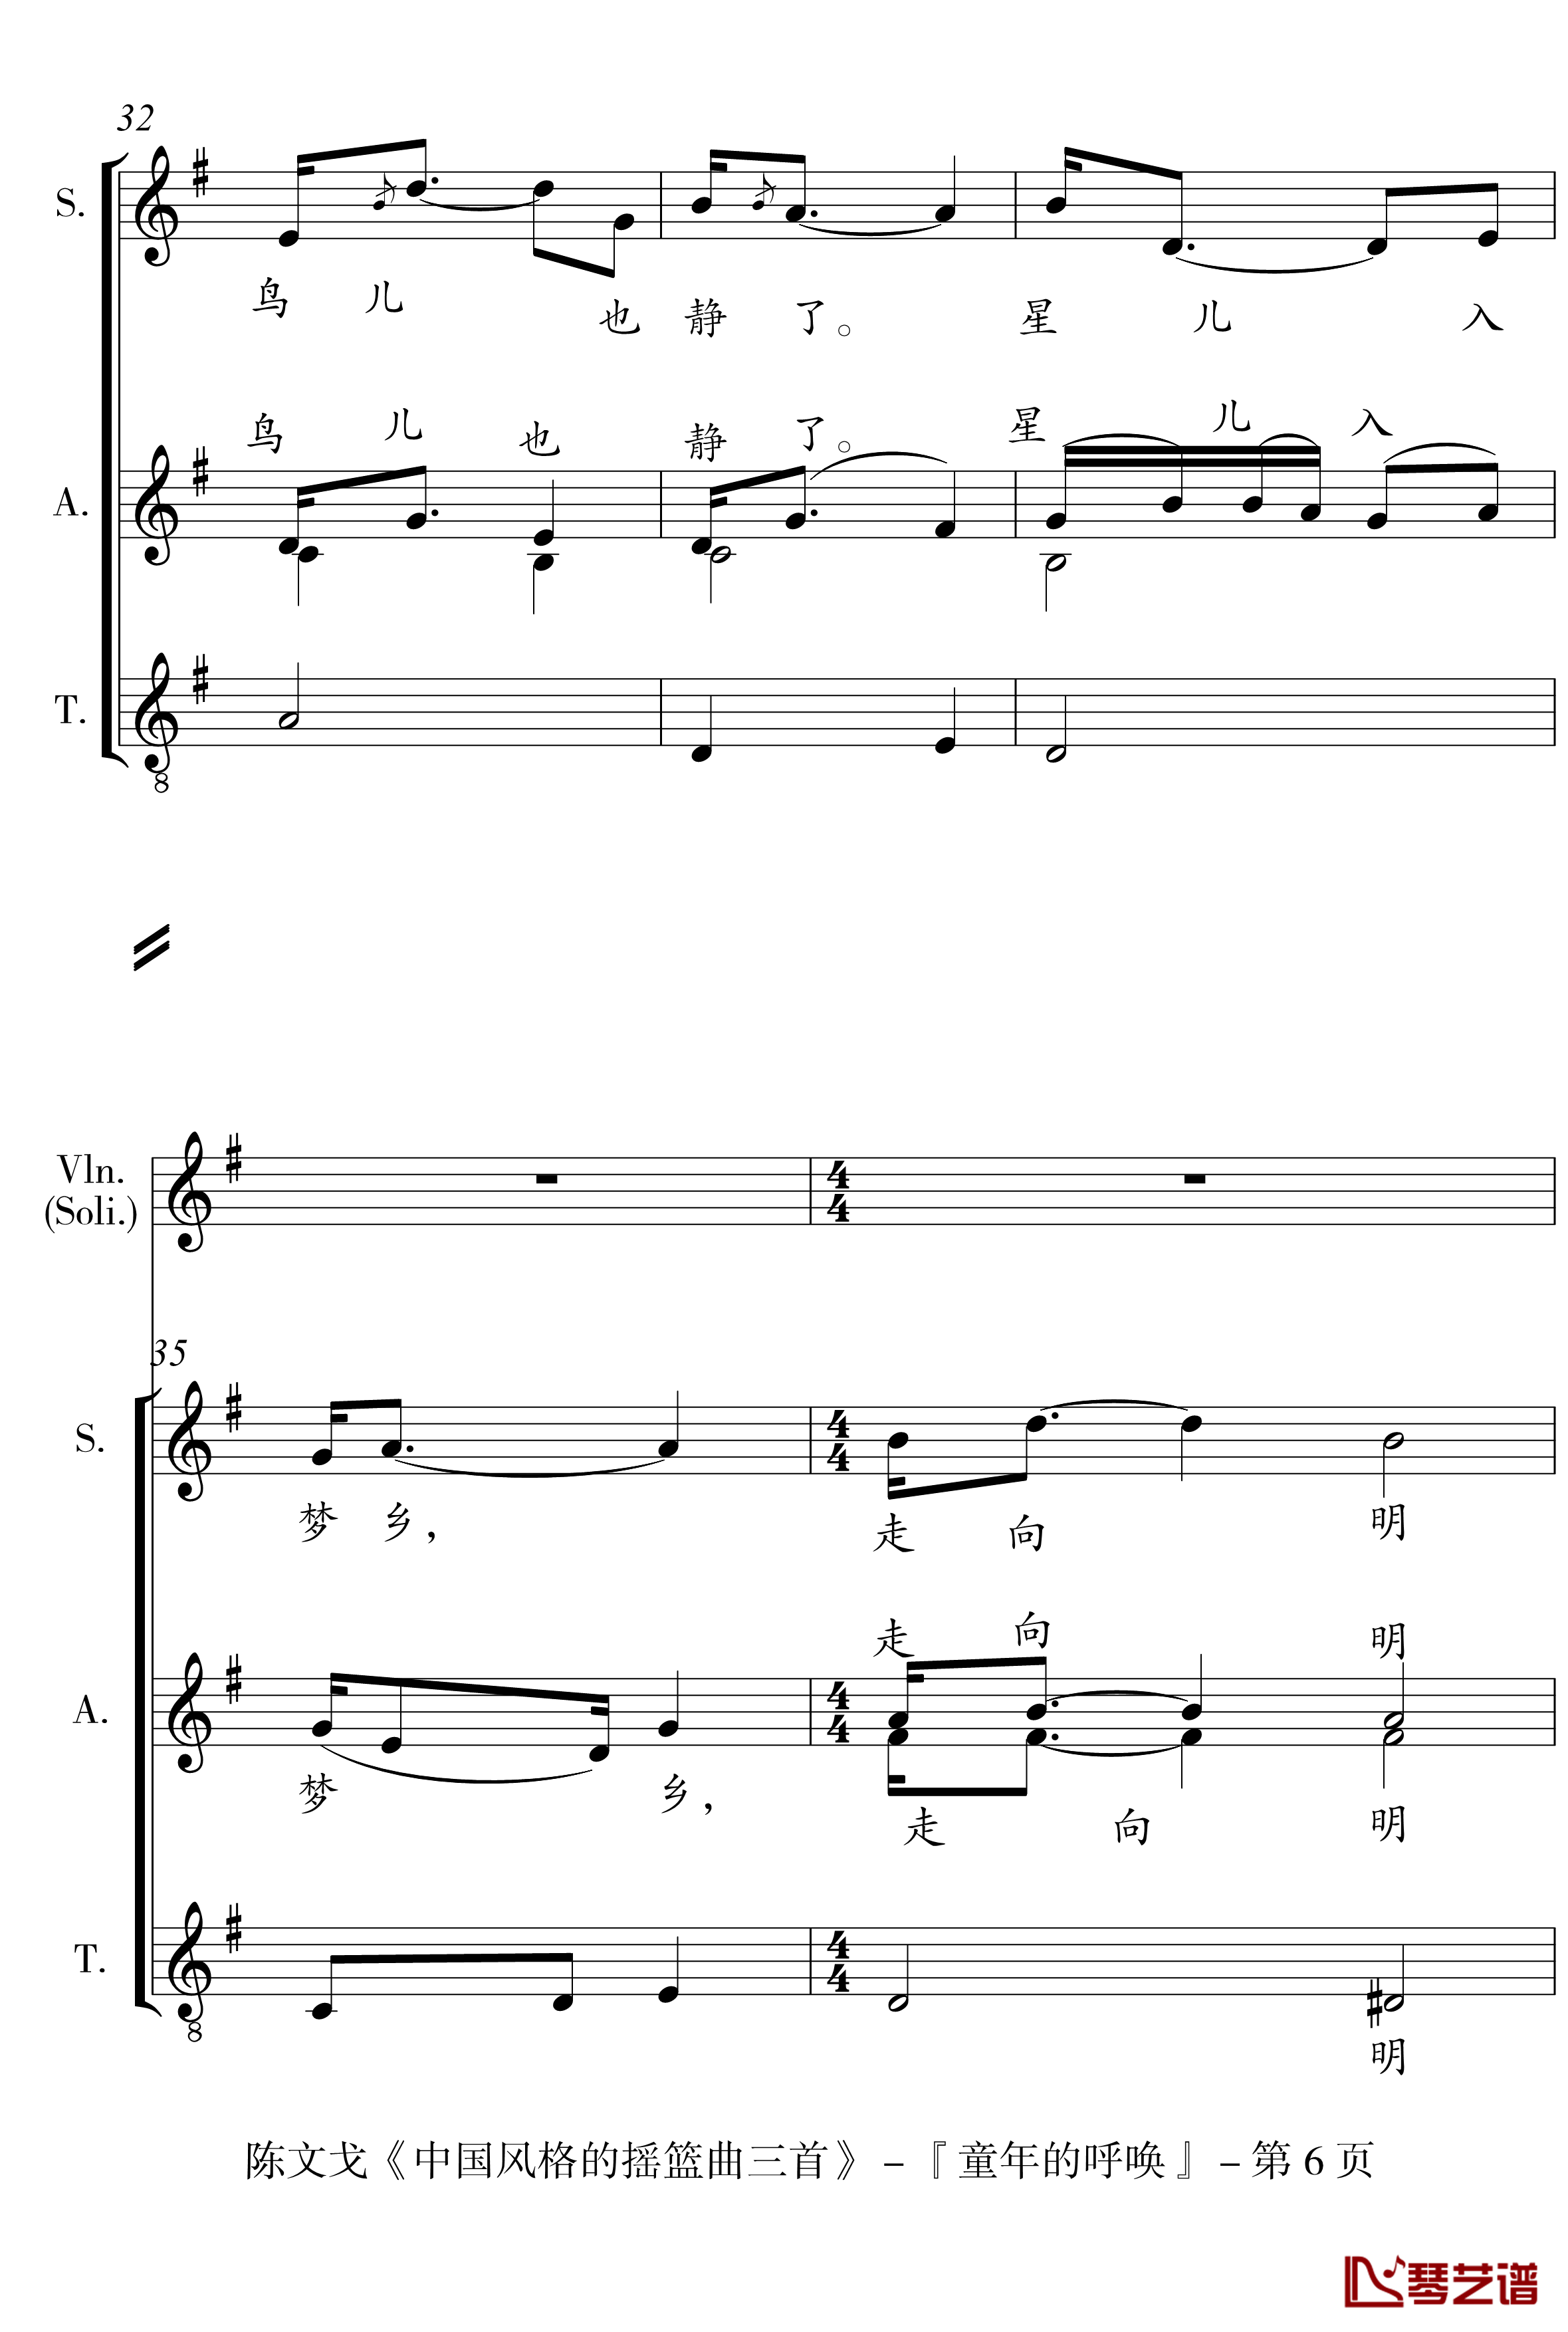 中国风格的合唱摇篮曲三首钢琴谱-I, II, III-陈文戈6